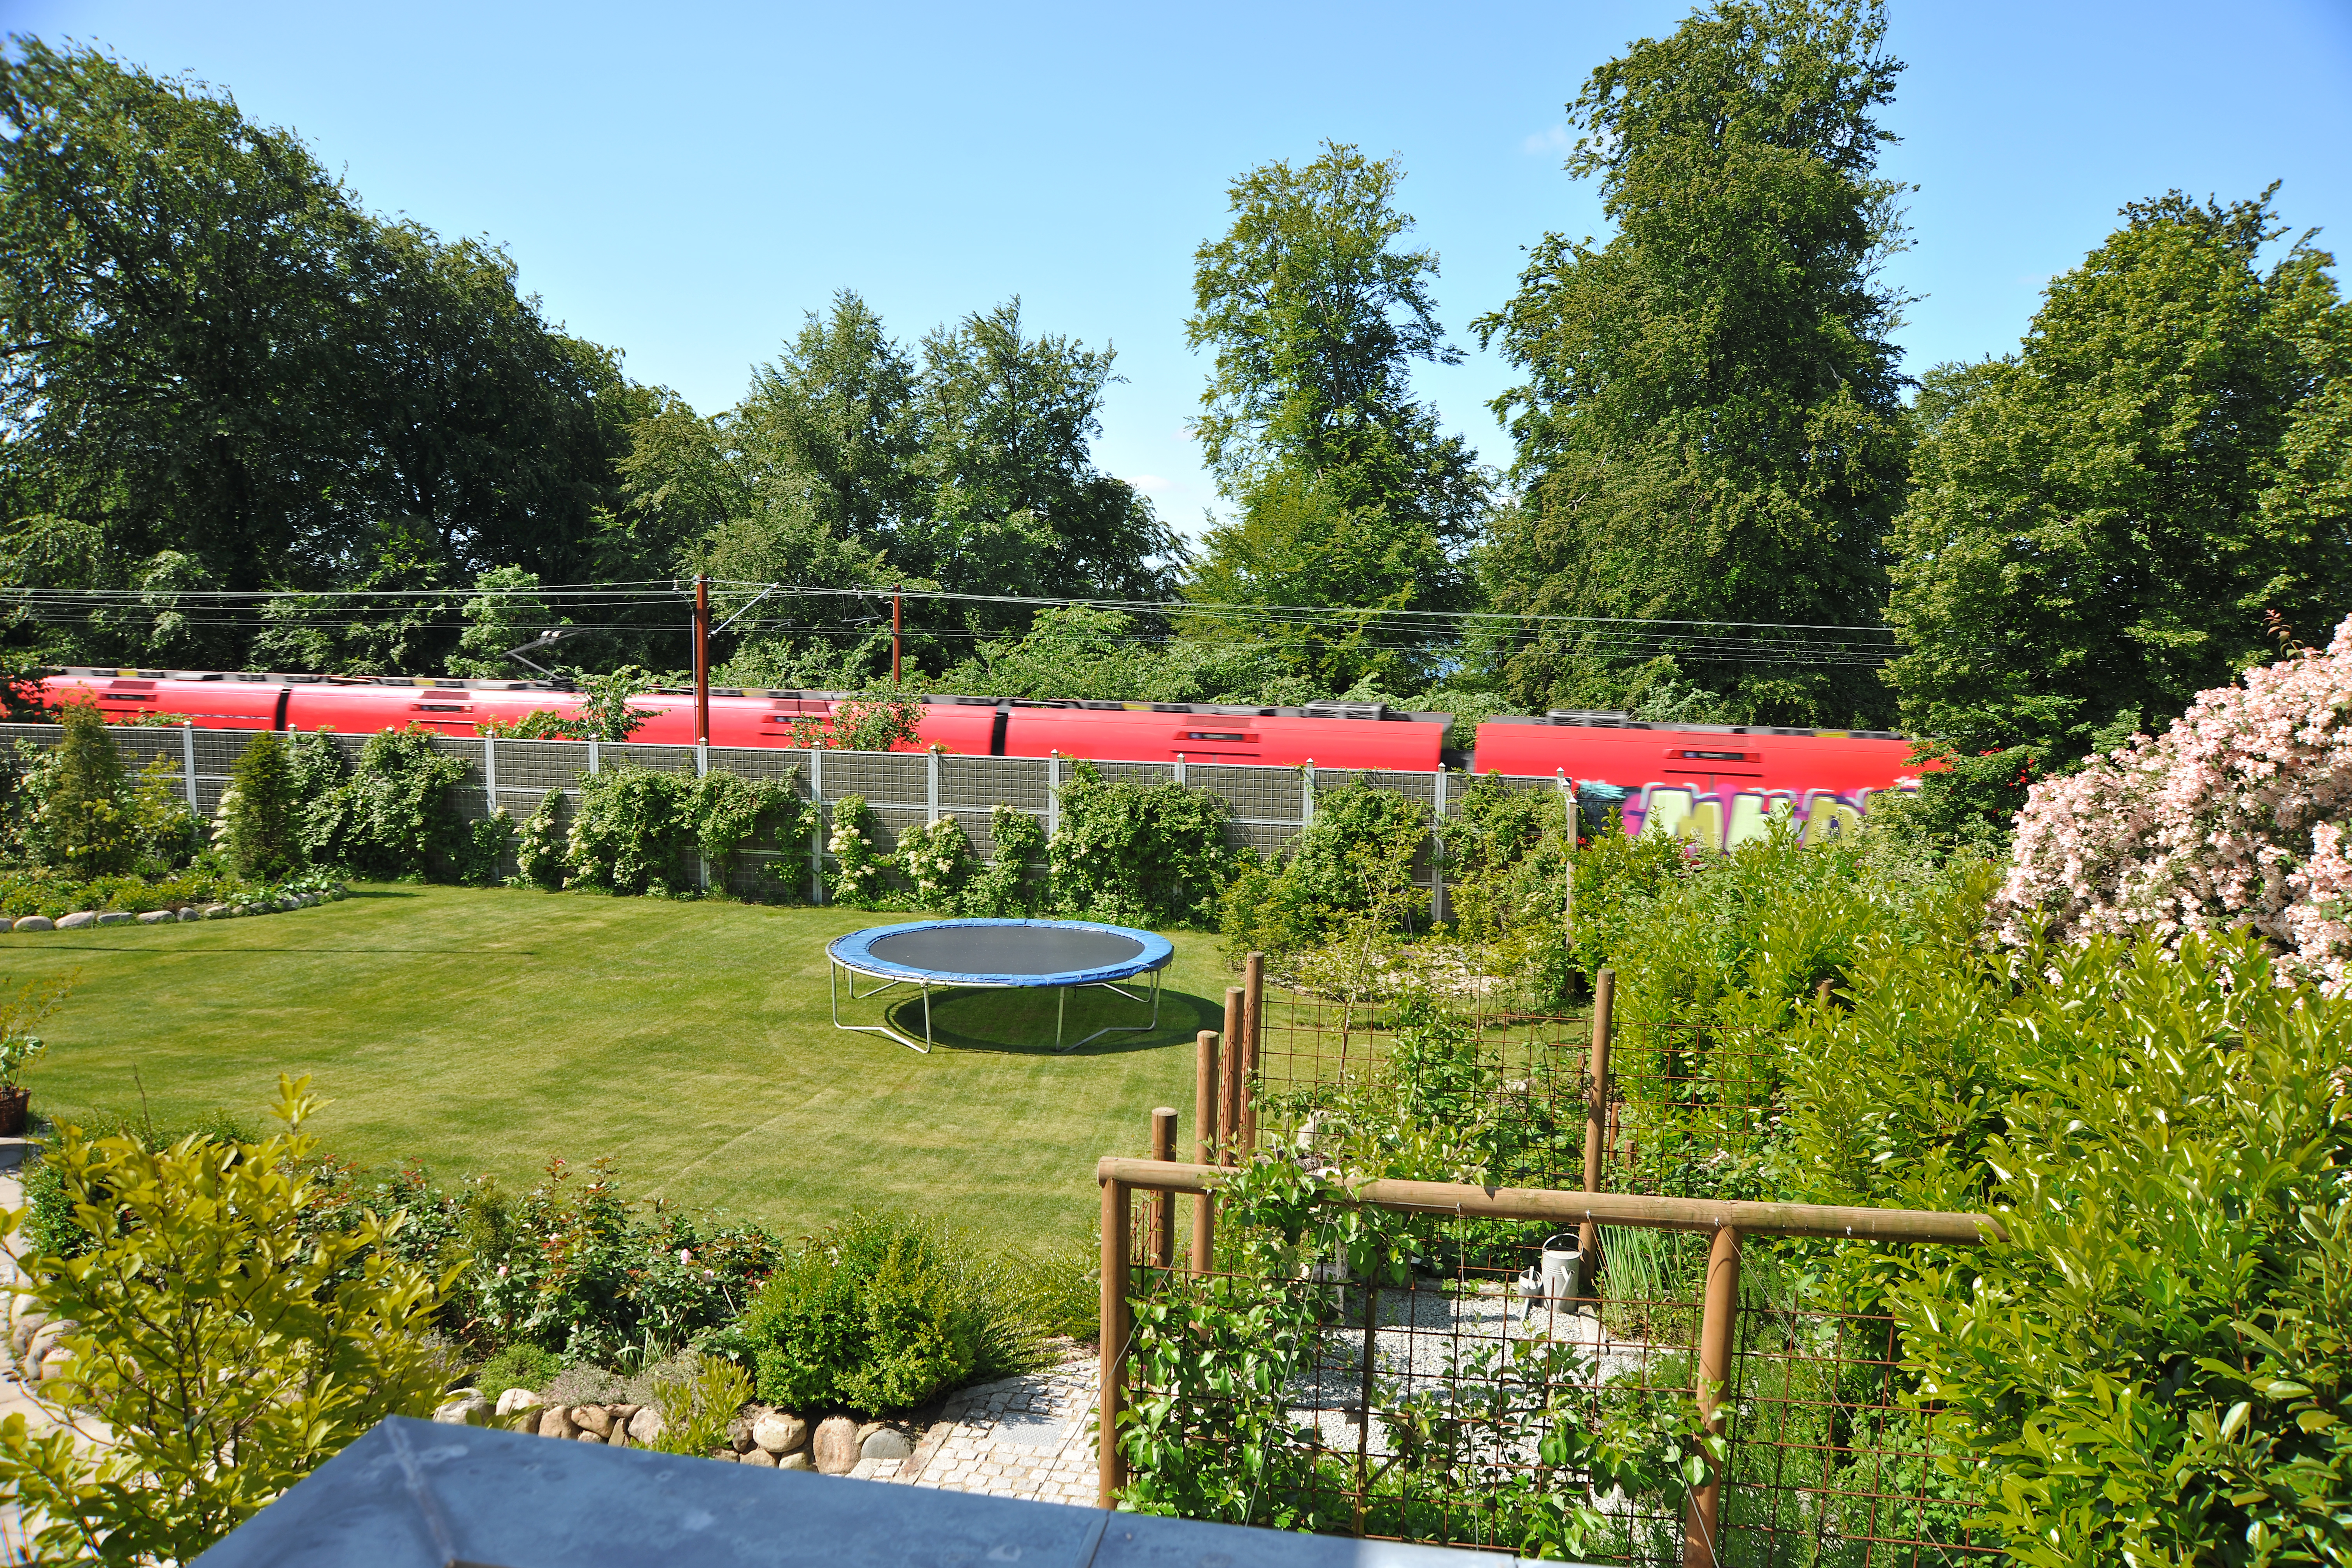 Ein Noistop® Steel-Lärmschutzzaun von Poda Zaun mit Bepflanzung in einem Garten, um den Lärm einer direkt neben dem Garten verlaufenden Bahnstrecke abzuschirmen